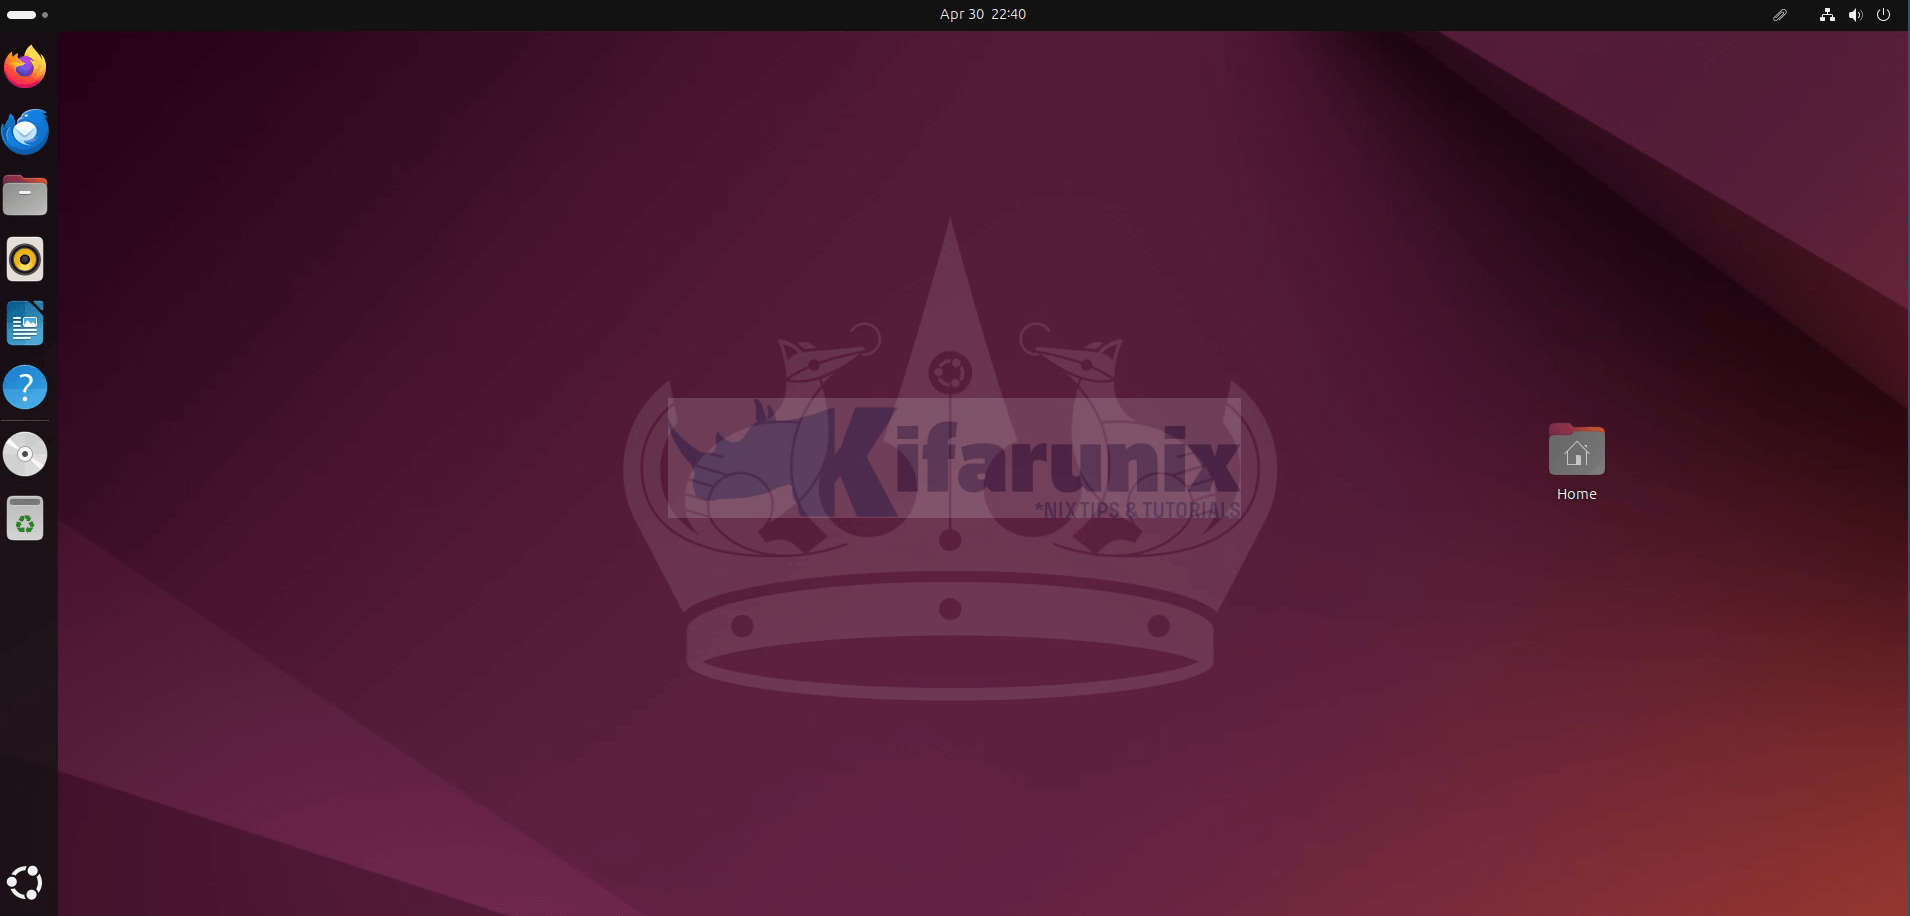 upgrade ubuntu 22.04 to Ubuntu 24.04